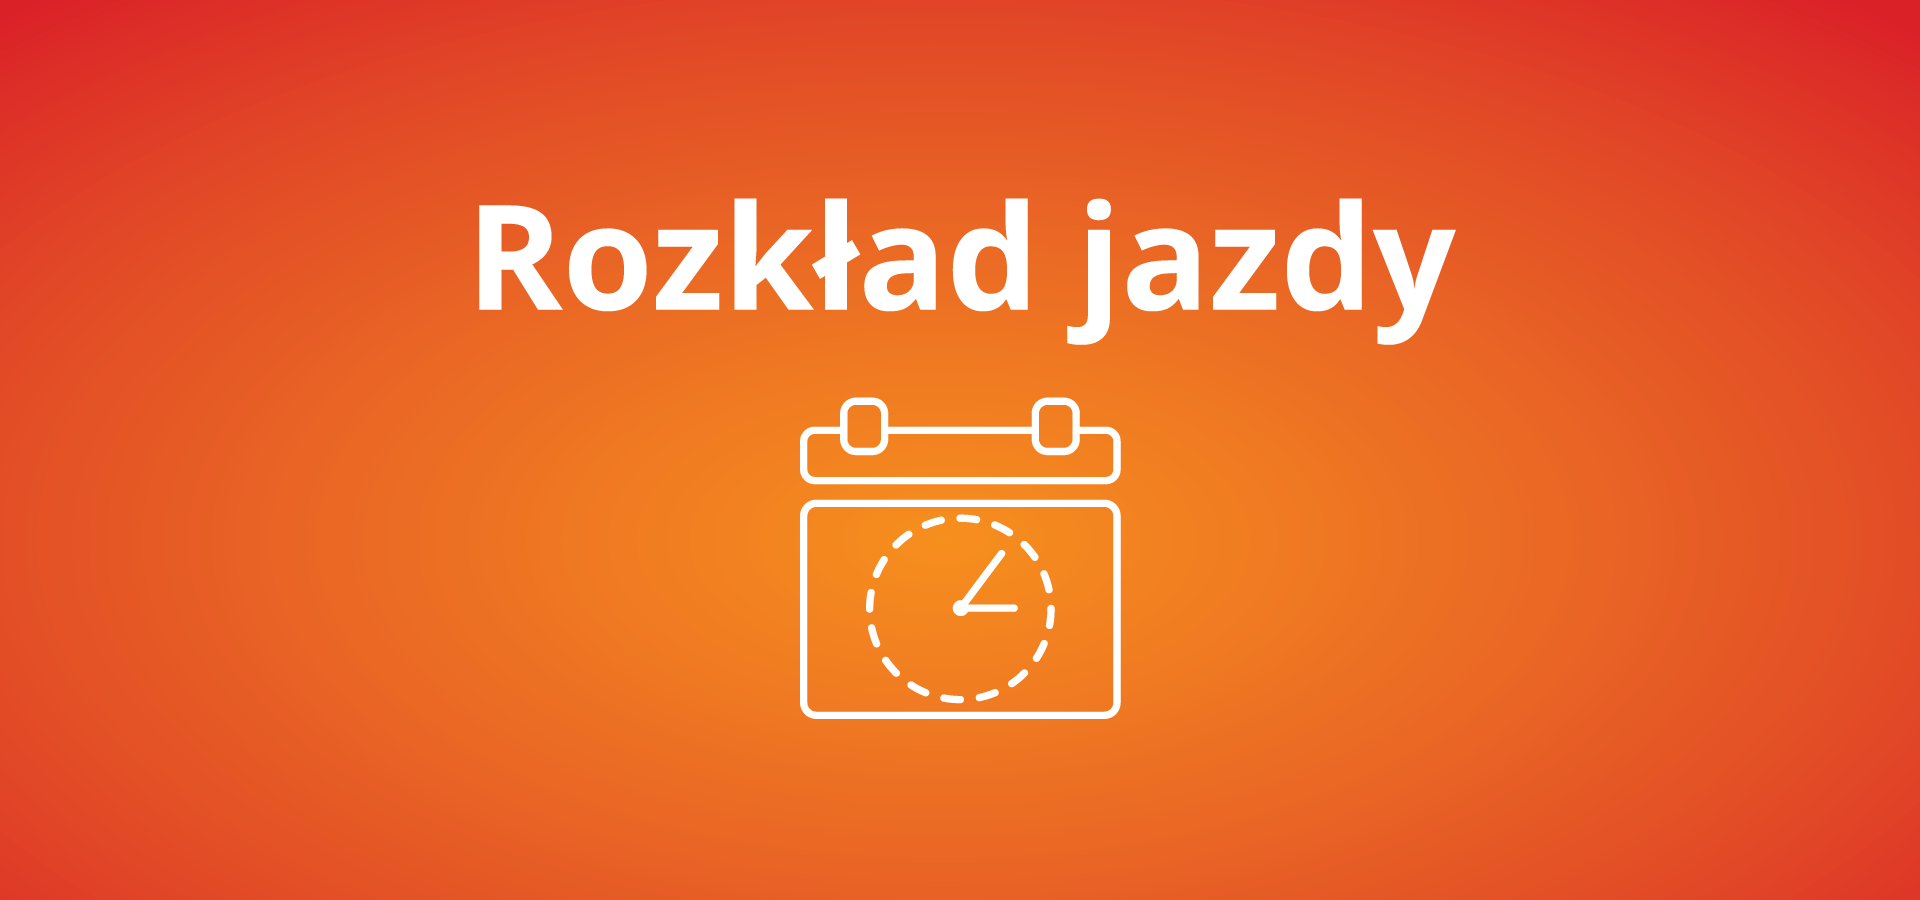 Nowy rozkłady jazdy pociągów obowiązujący od 11 grudnia 2022 r. w woj. świętokrzyskim